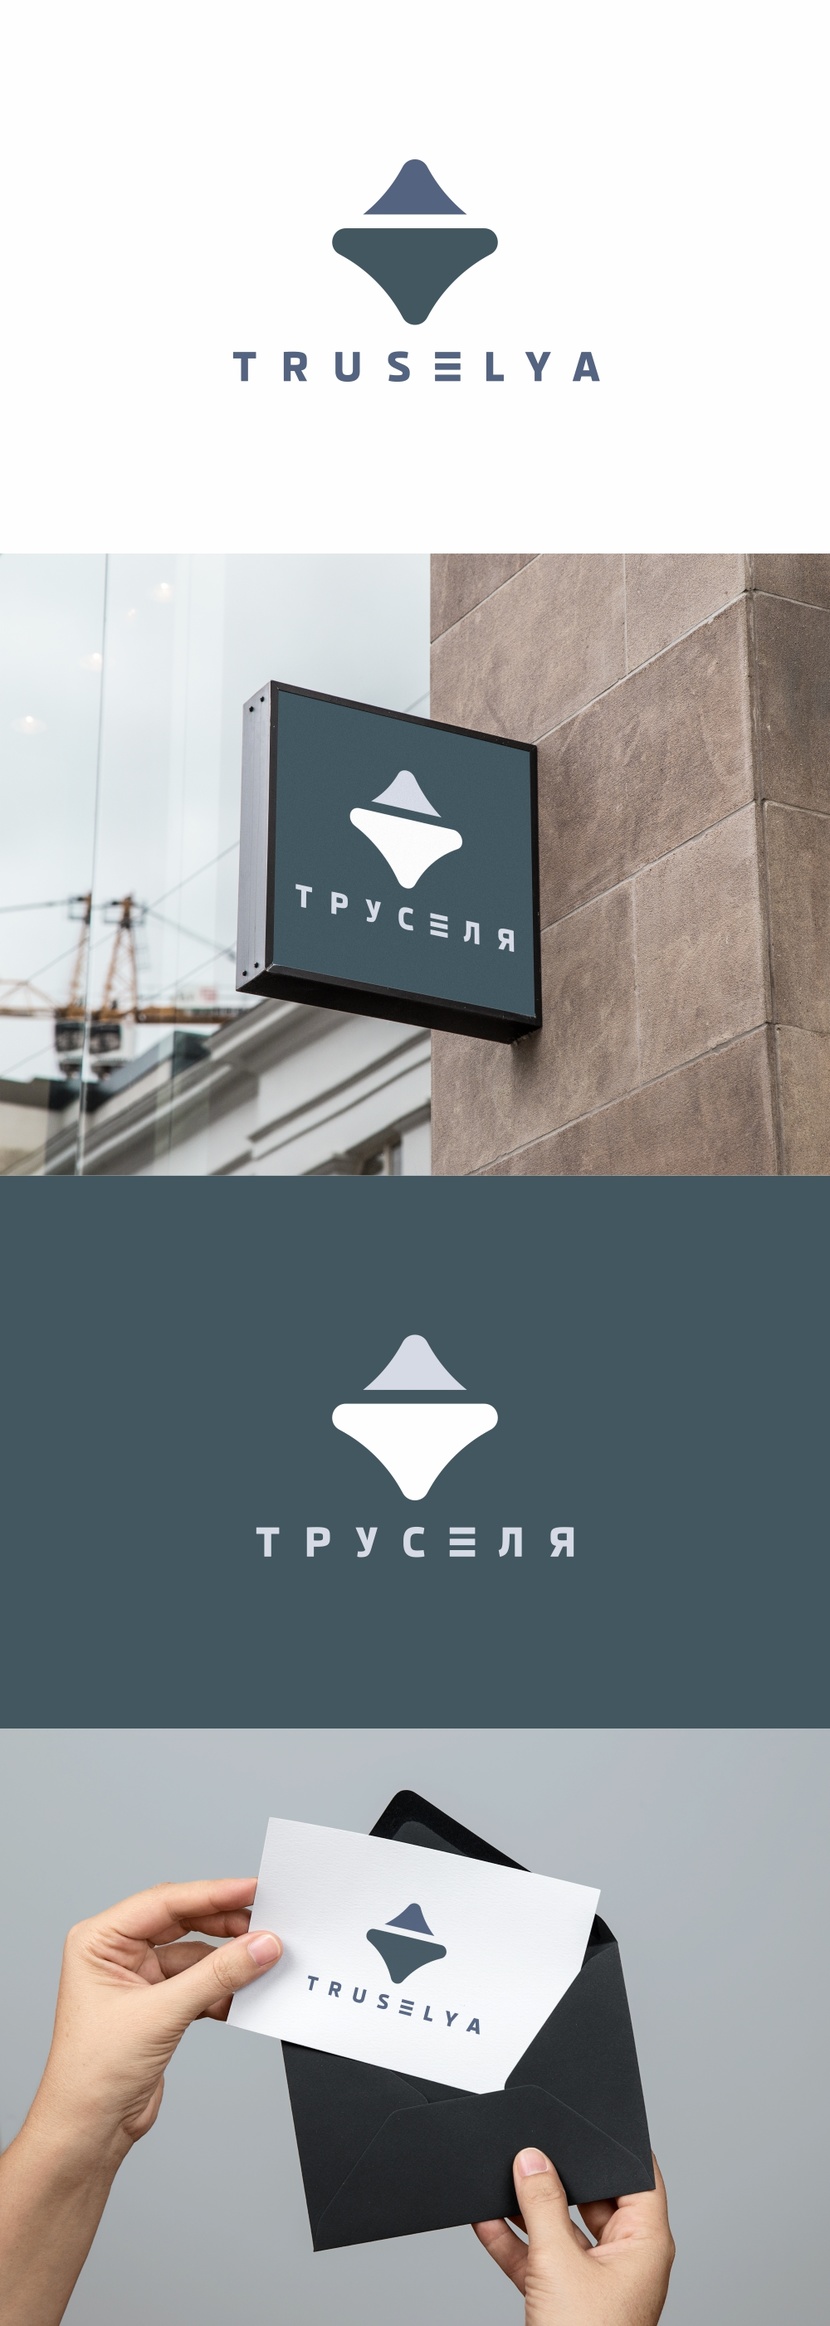 Логотип для сети магазинов и интернет магазина мужского нижнего белья "Труселя" truselya.ru  -  автор Андрей Мартынович